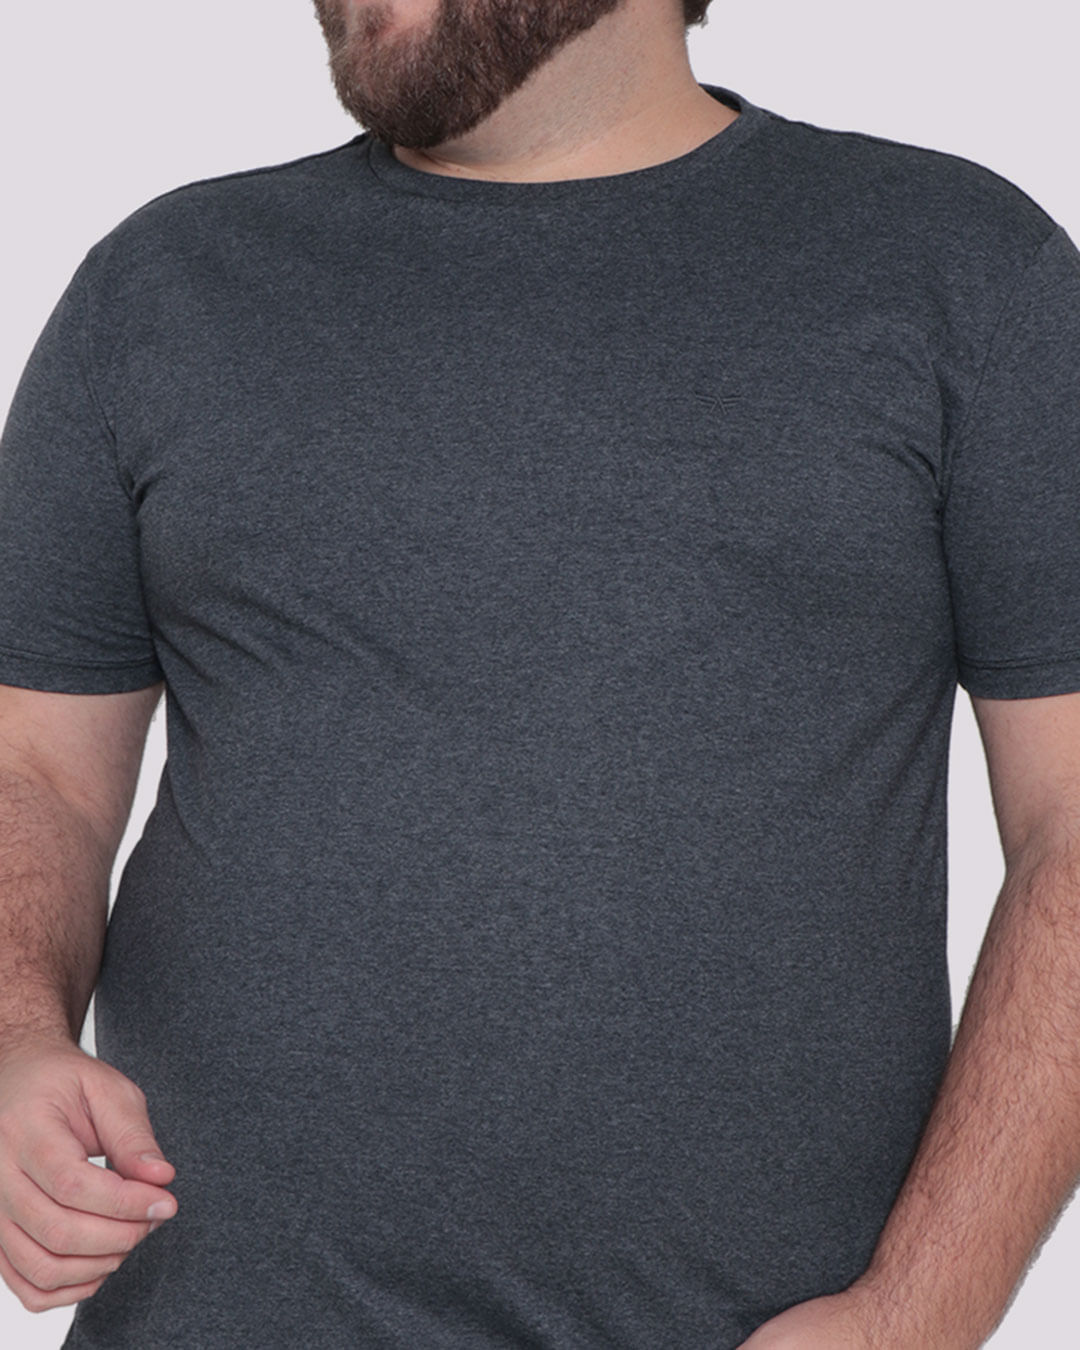 Camiseta-Plus-Size-Masculina-Manga-Curta-Cinza-Escuro